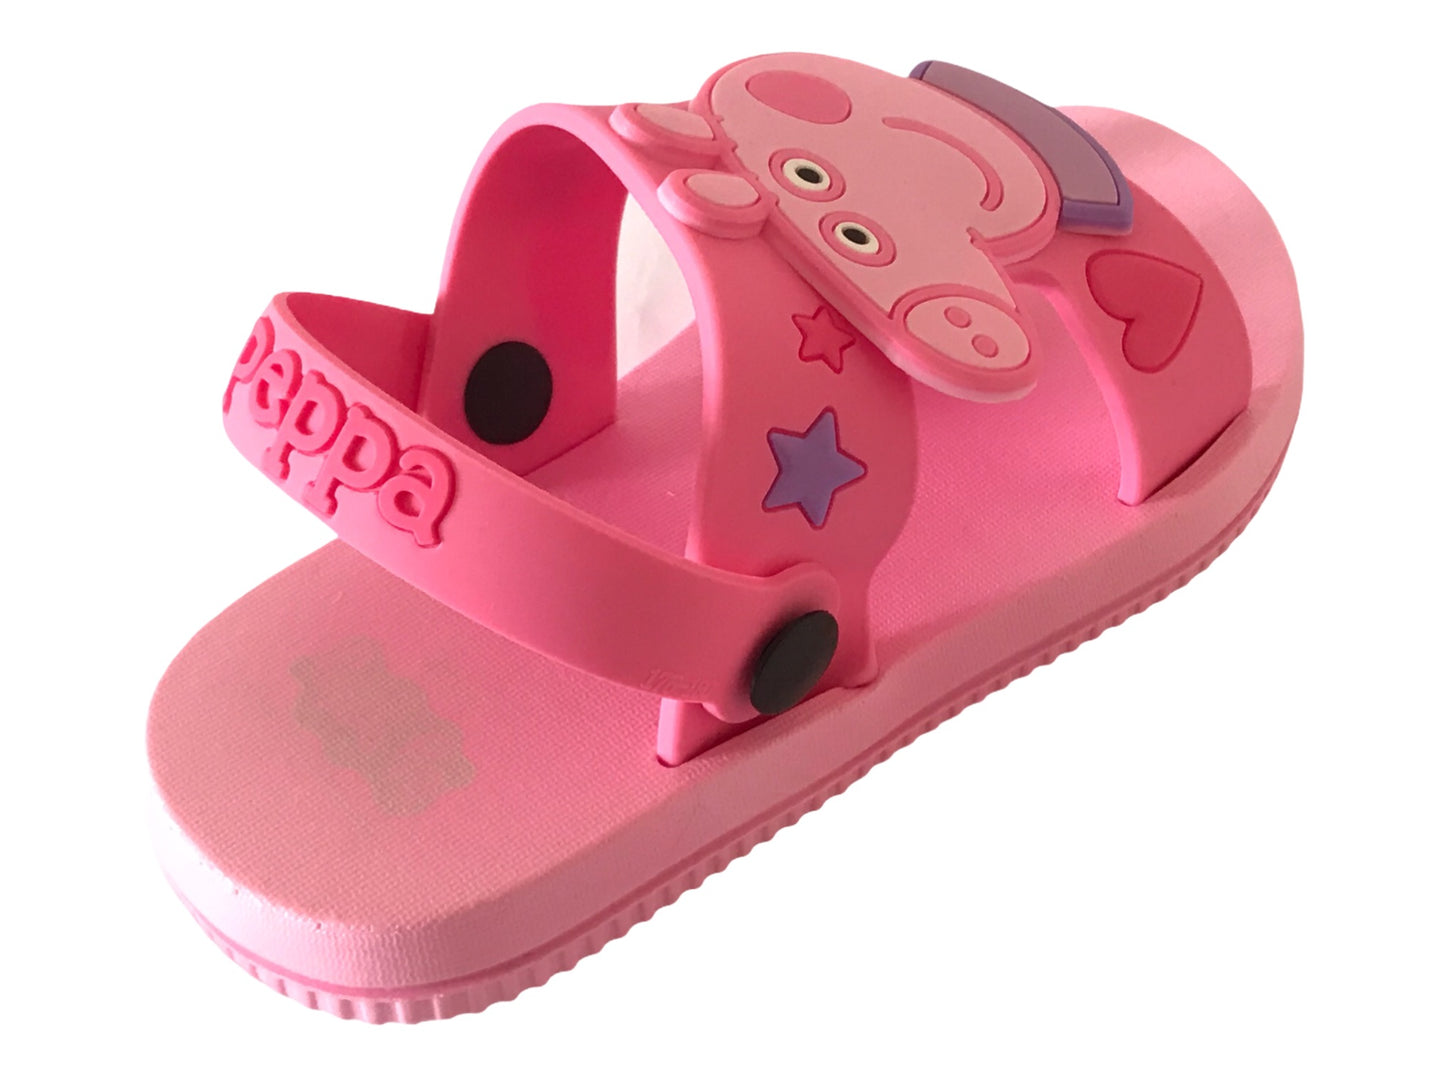 Girls' Peppa Pig Kids Sandals Toddler  Beach Sandals Pink